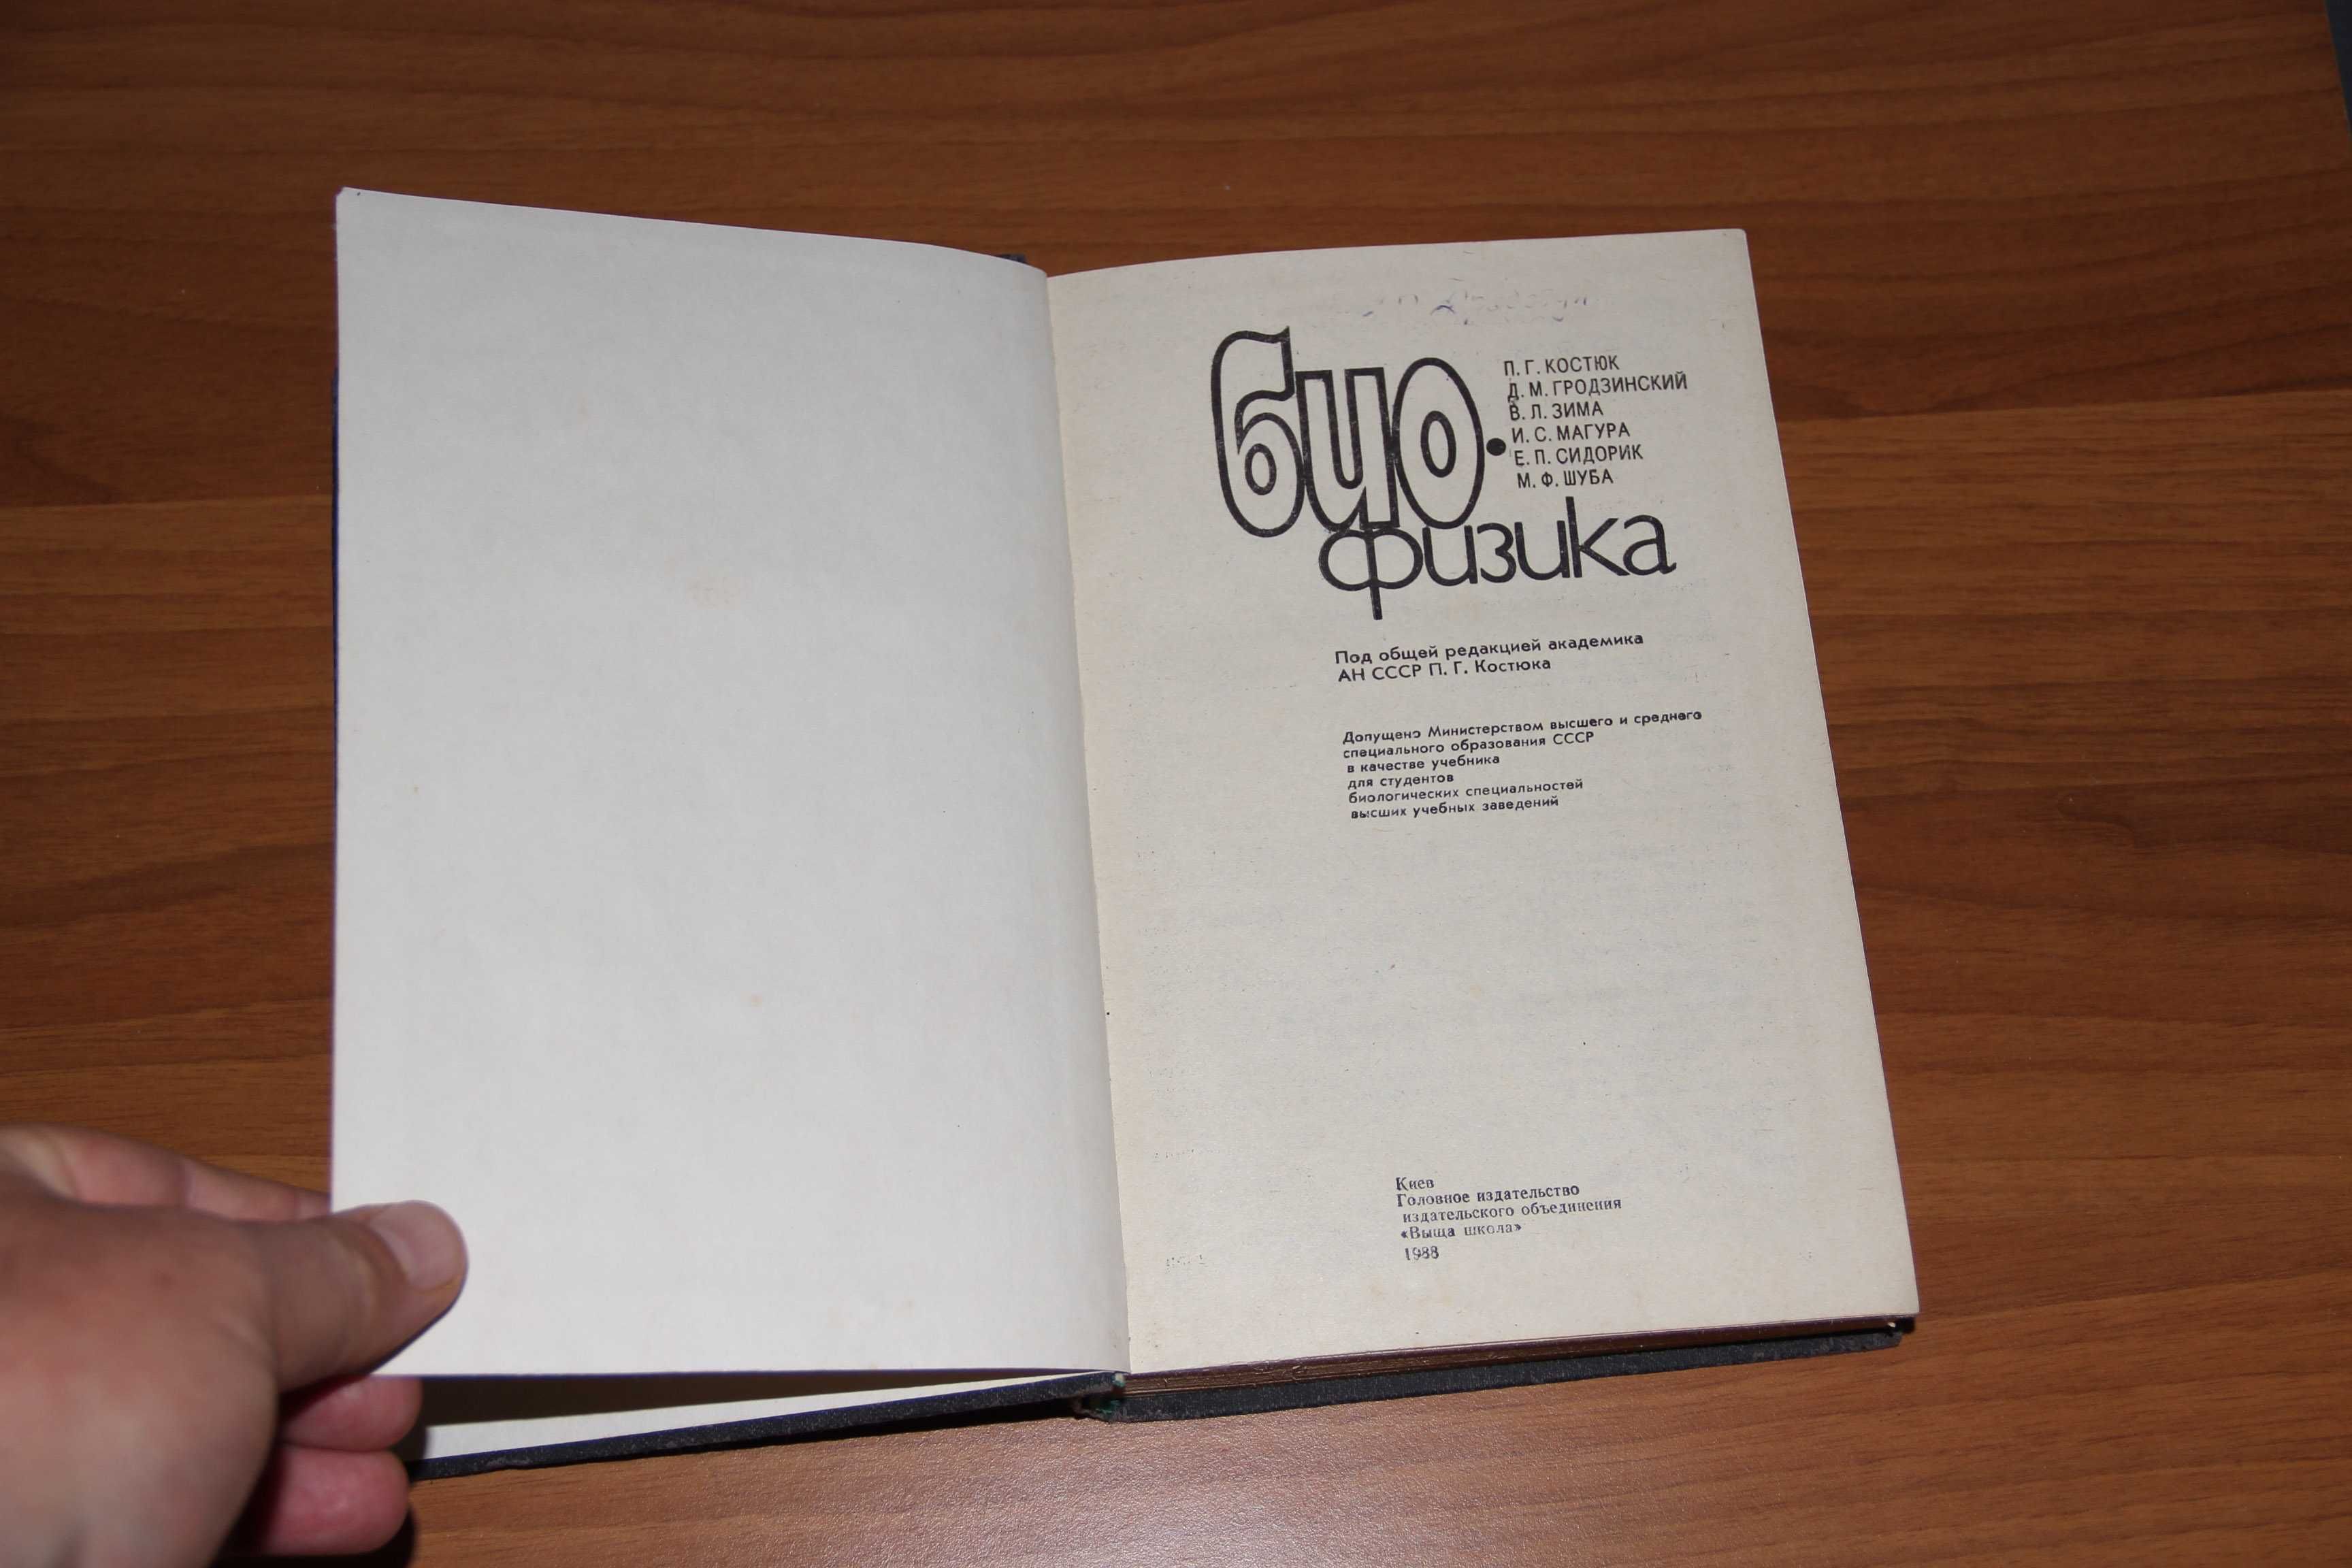 Костюк П. Биофизика. К.: Вища школа, 1988 ISBN 5-11-000094-8